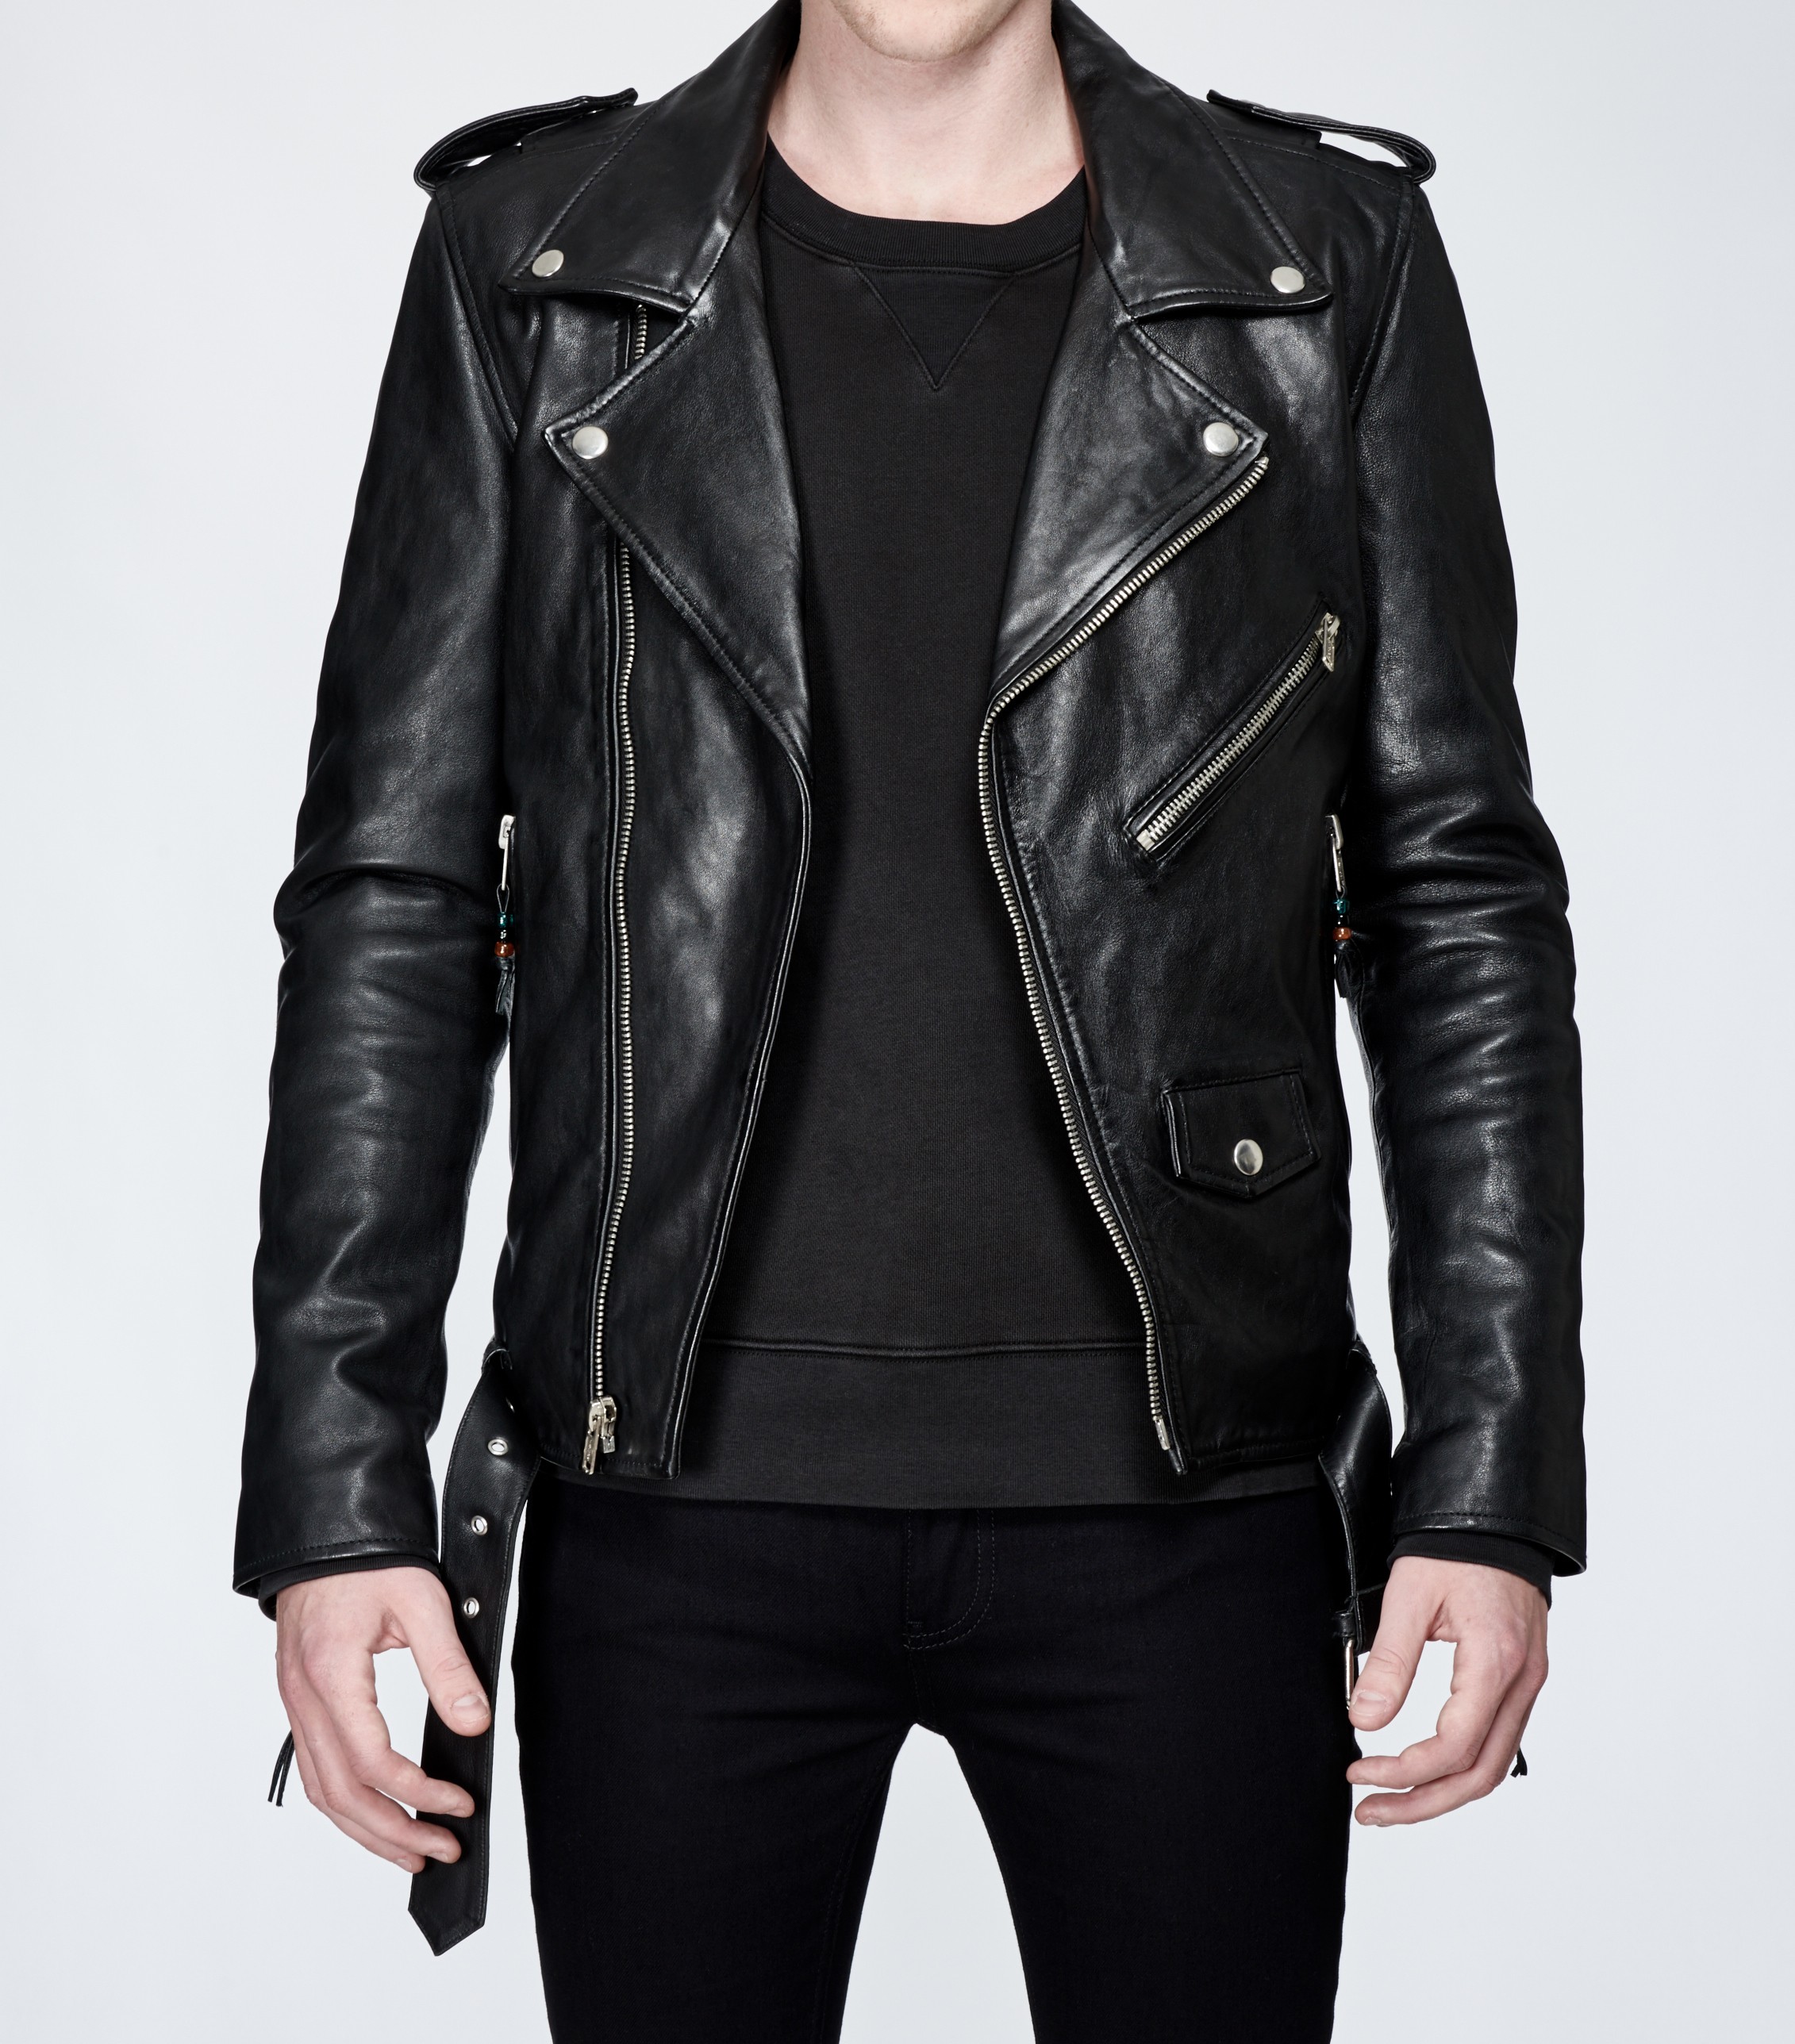 black leather jacket leather jacket 5 black leatherjacket leather jacket 5 black leatherjacket HHNVWFC